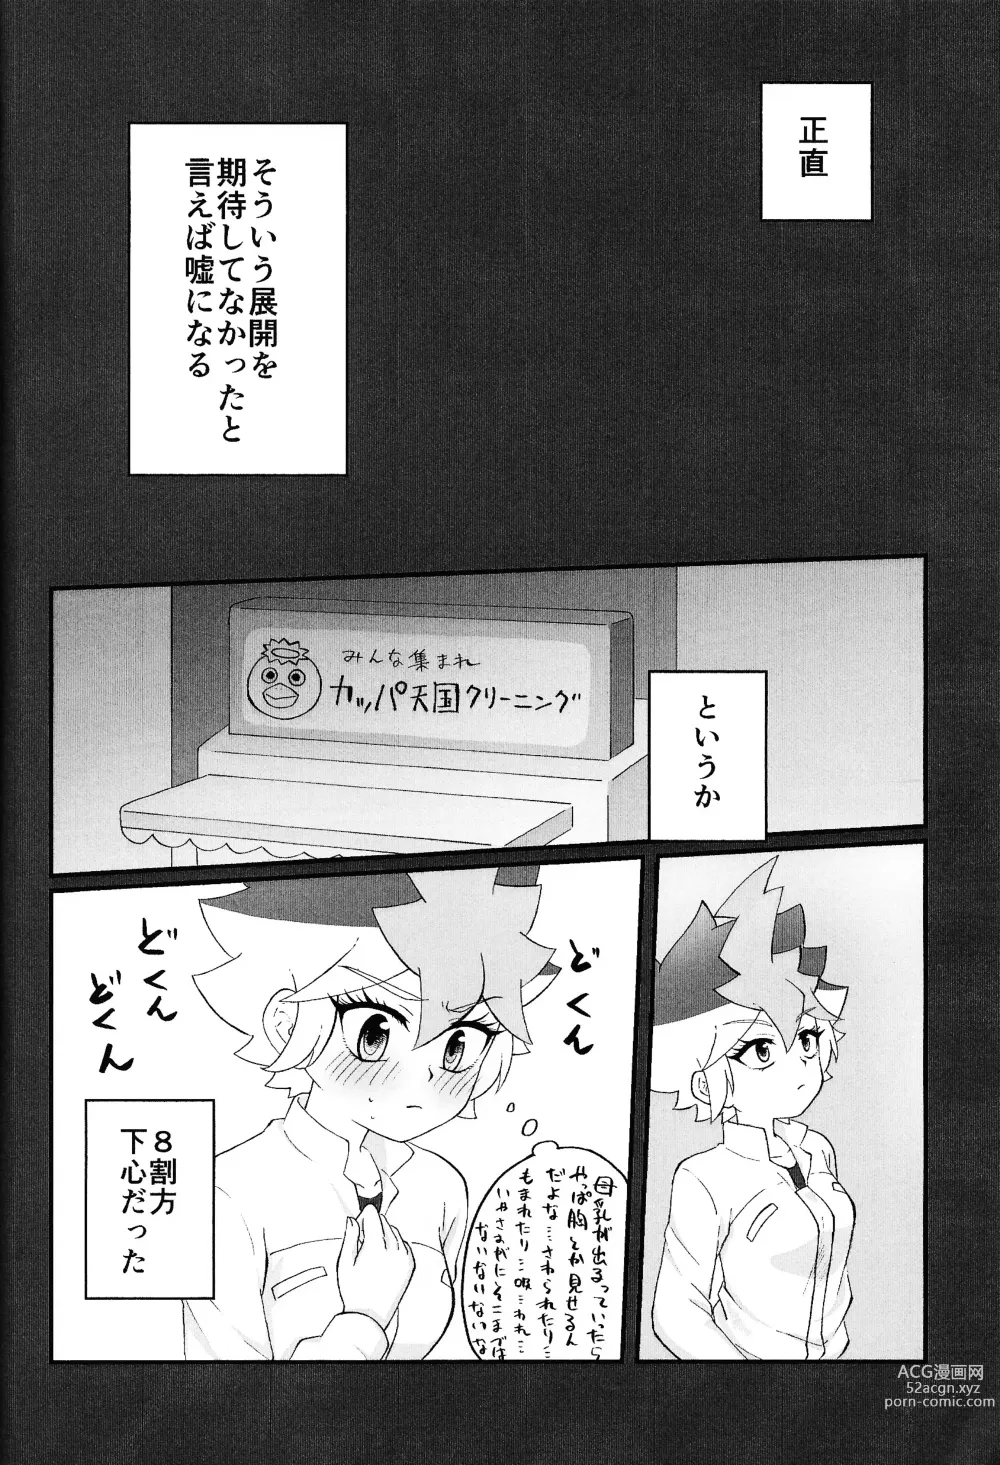 Page 35 of doujinshi Pandoranohako ka kindan no kajitsu ka